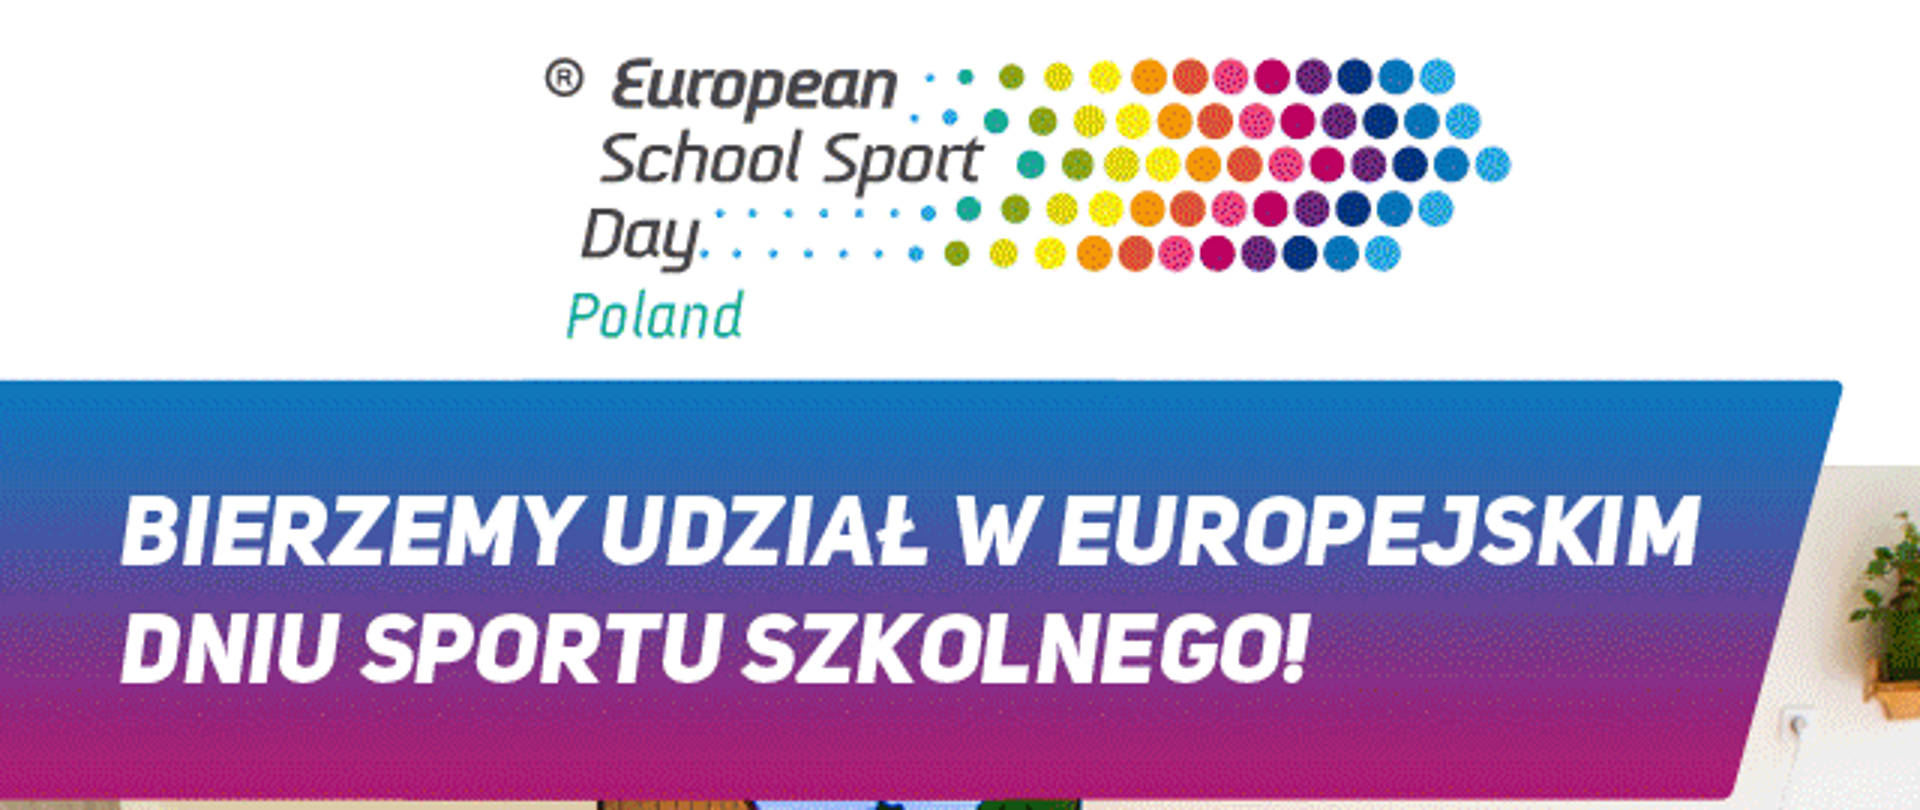 Na na górze napis "European School Sport Day Poland", obok kolorowe kropki, poniżej na niebiesko- fioletowym tle napis "bierzemy udział w europejskim dniu sportu szkolnego", na środku dzieci stojące plecami, naśladujące ruchy wyświetlane na ekranie, poniżej data "29.09.2023r, na dole logo organizatorów